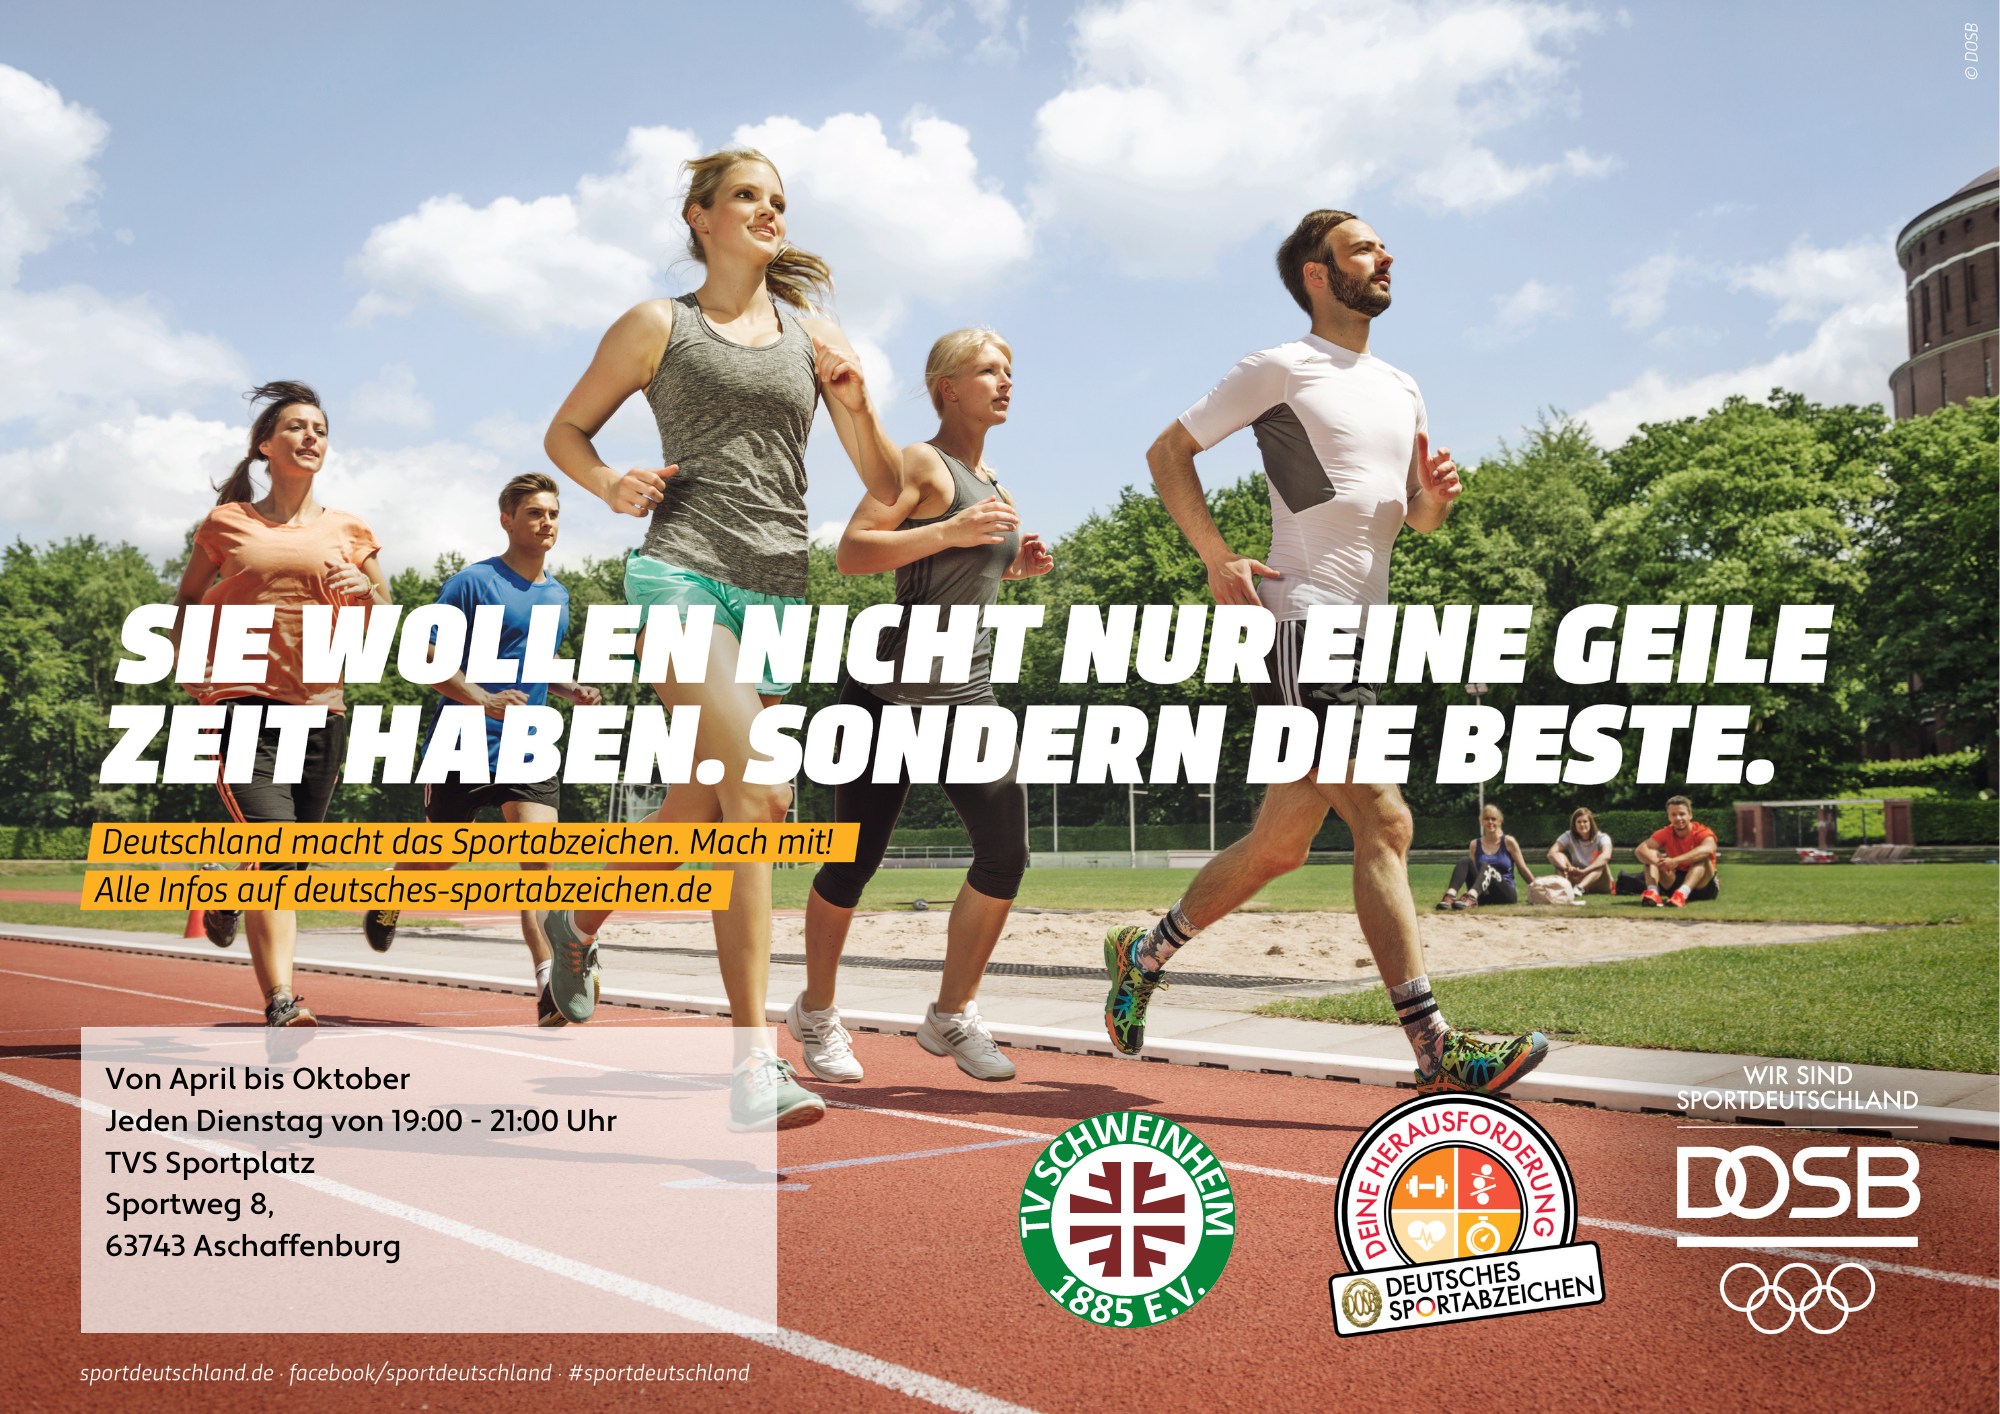 SD-Motiv · Deutsches Sportabzeichen · Laufen